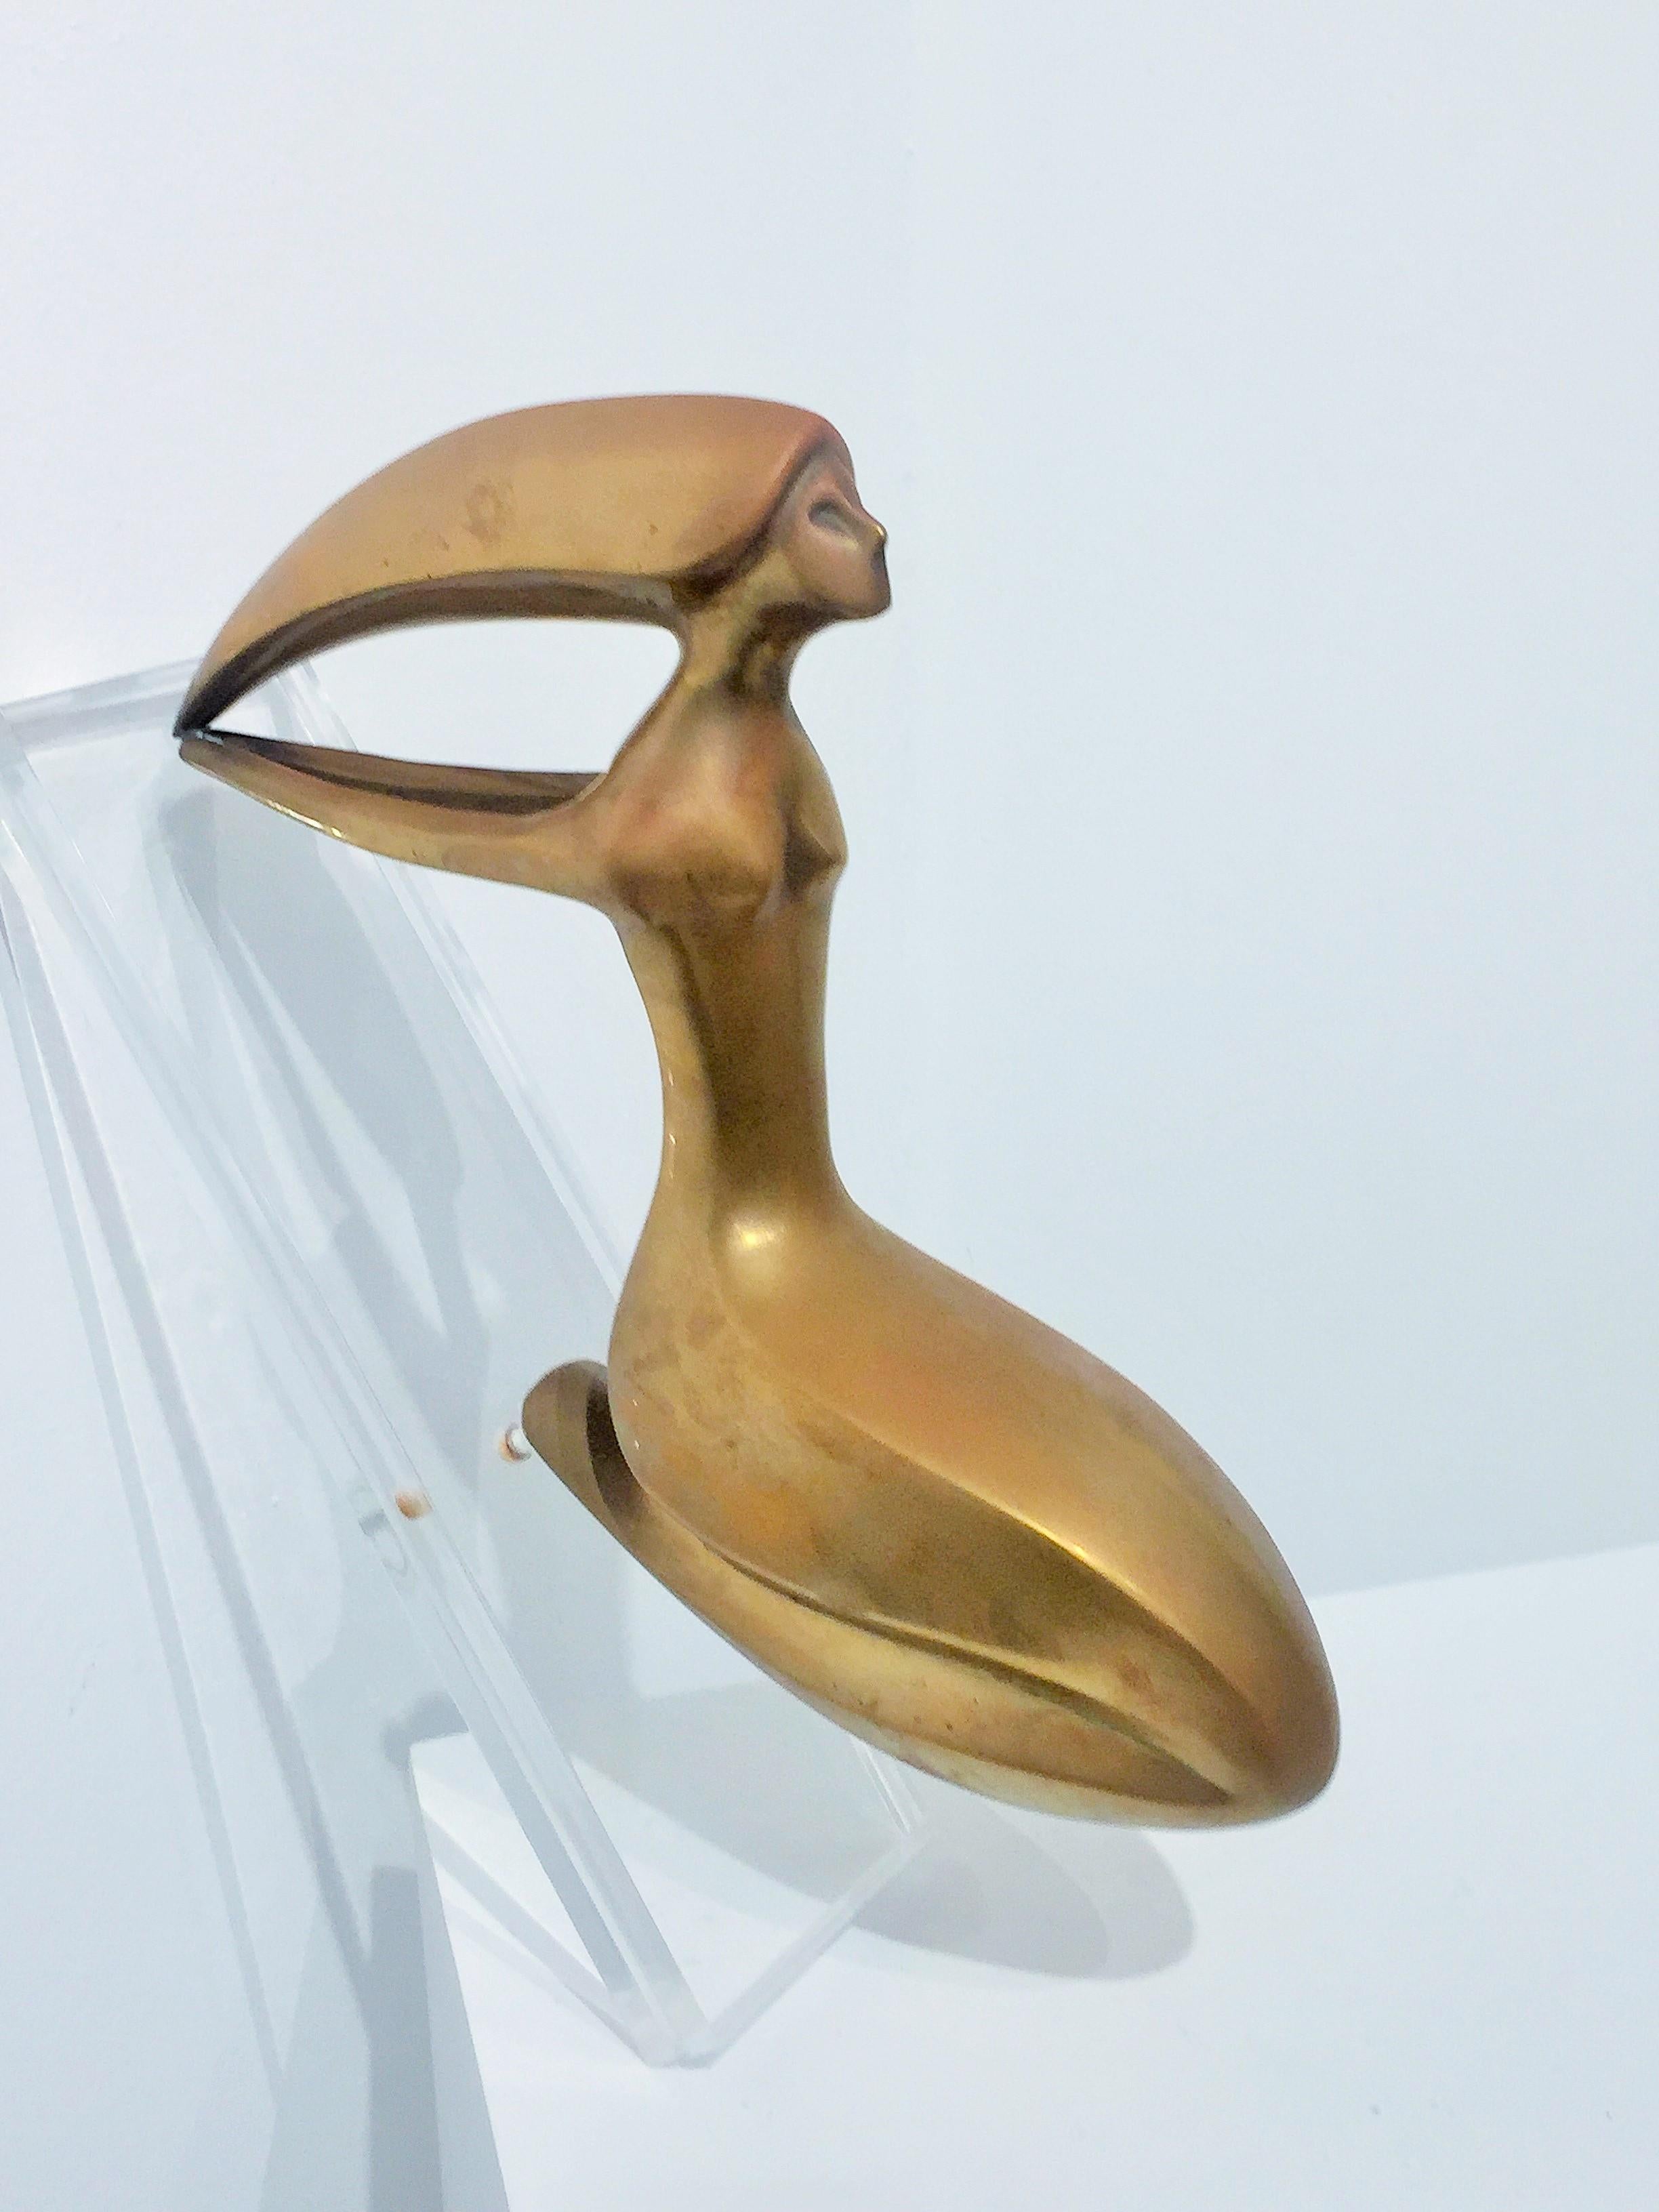 Unknown Figurative Female Brass Sculpture